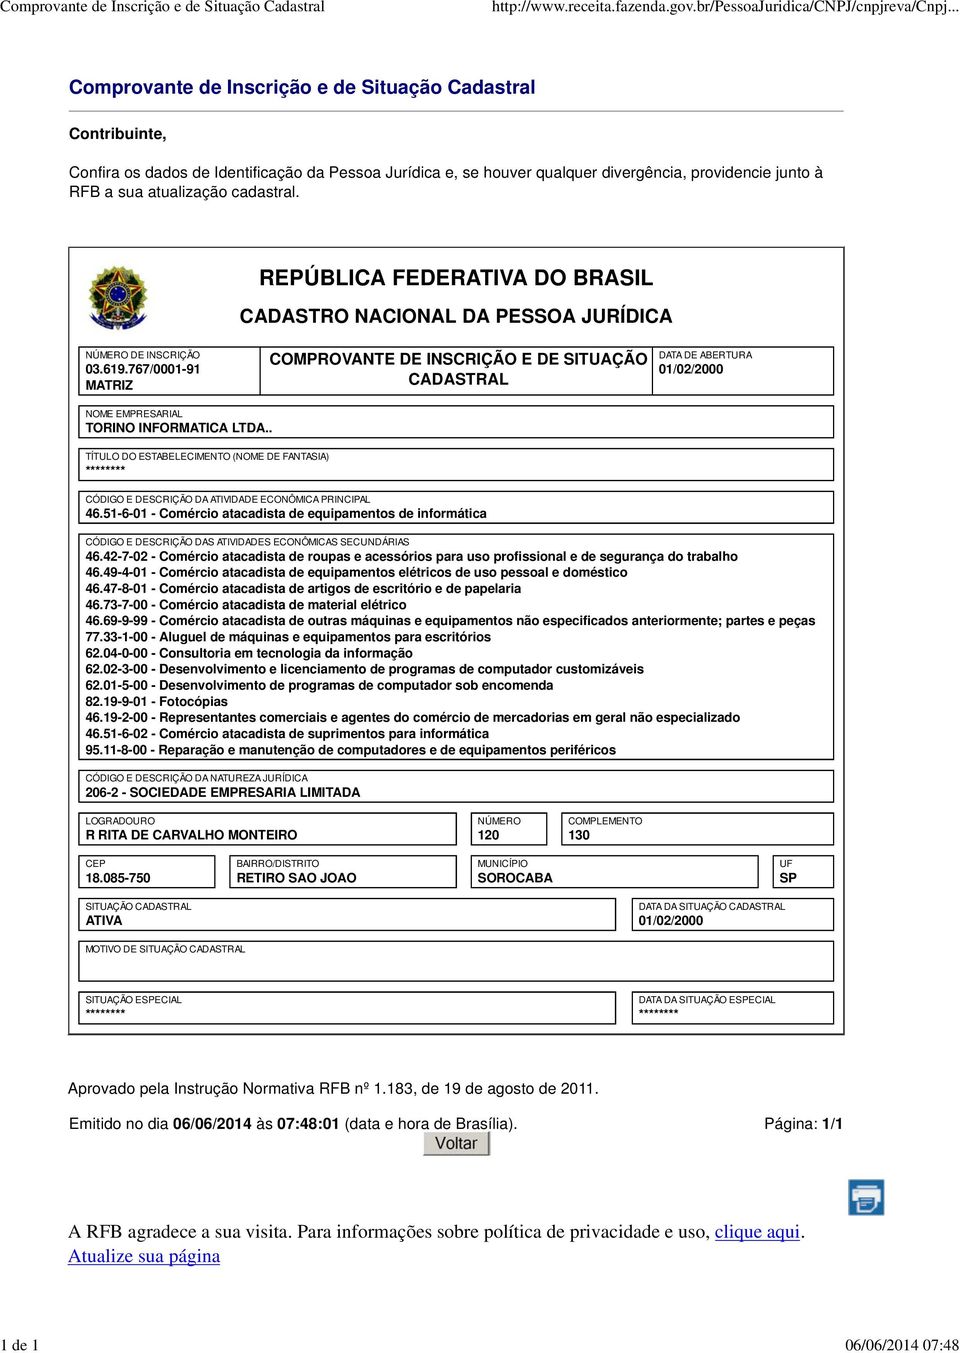 RFB a sua atualização cadastral. REPÚBLICA FEDERATIVA DO BRASIL CADASTRO NACIONAL DA PESSOA JURÍDICA NÚMERO DE INSCRIÇÃO 03.619.